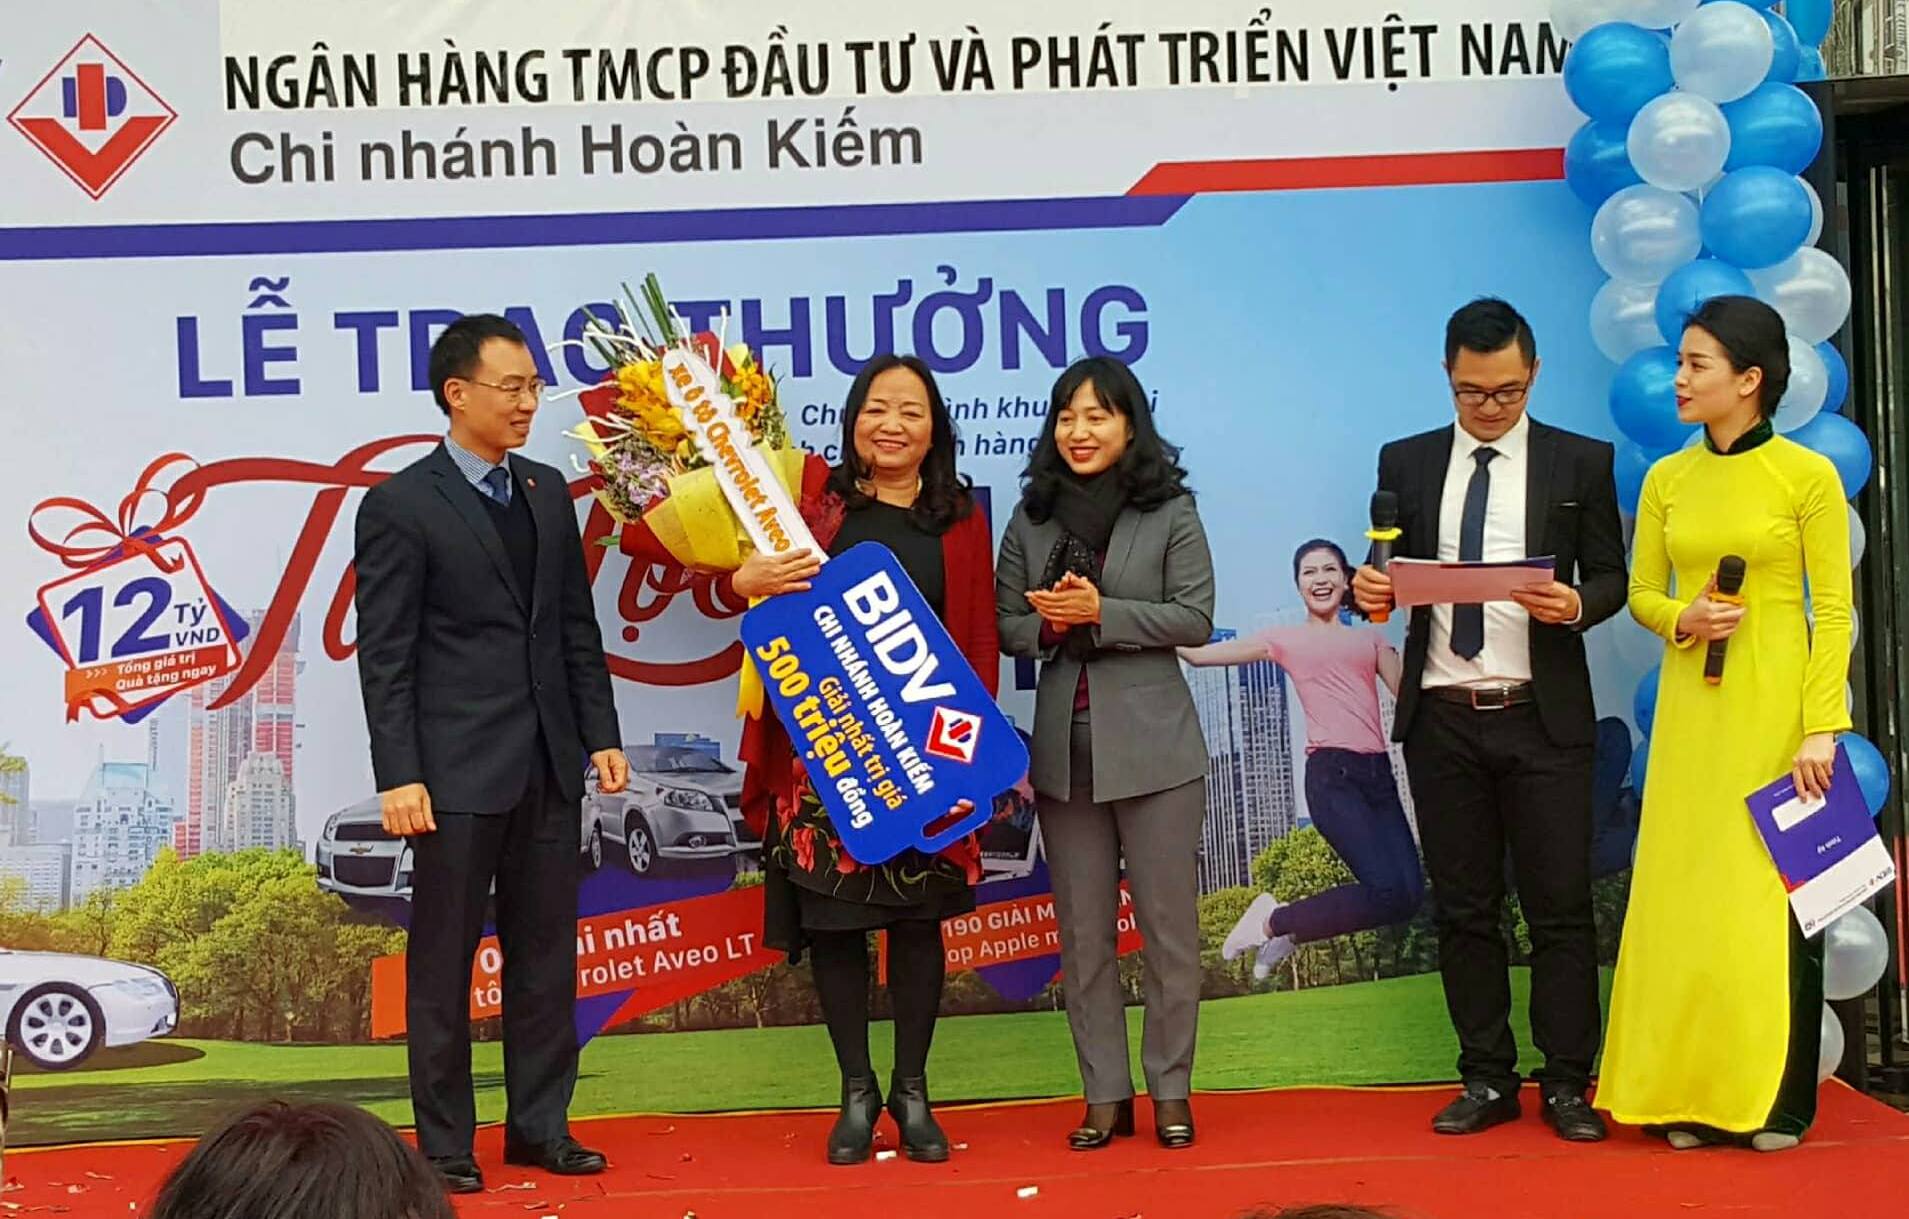 Khách hàng Võ Thị Hồng Minh nhận Giải Nhất của Chương trình chứng chỉ tiền gửi “Tài lộc nhân đôi”, trị giá 500 triệu đồng từ BIDV Hoàn Kiếm.